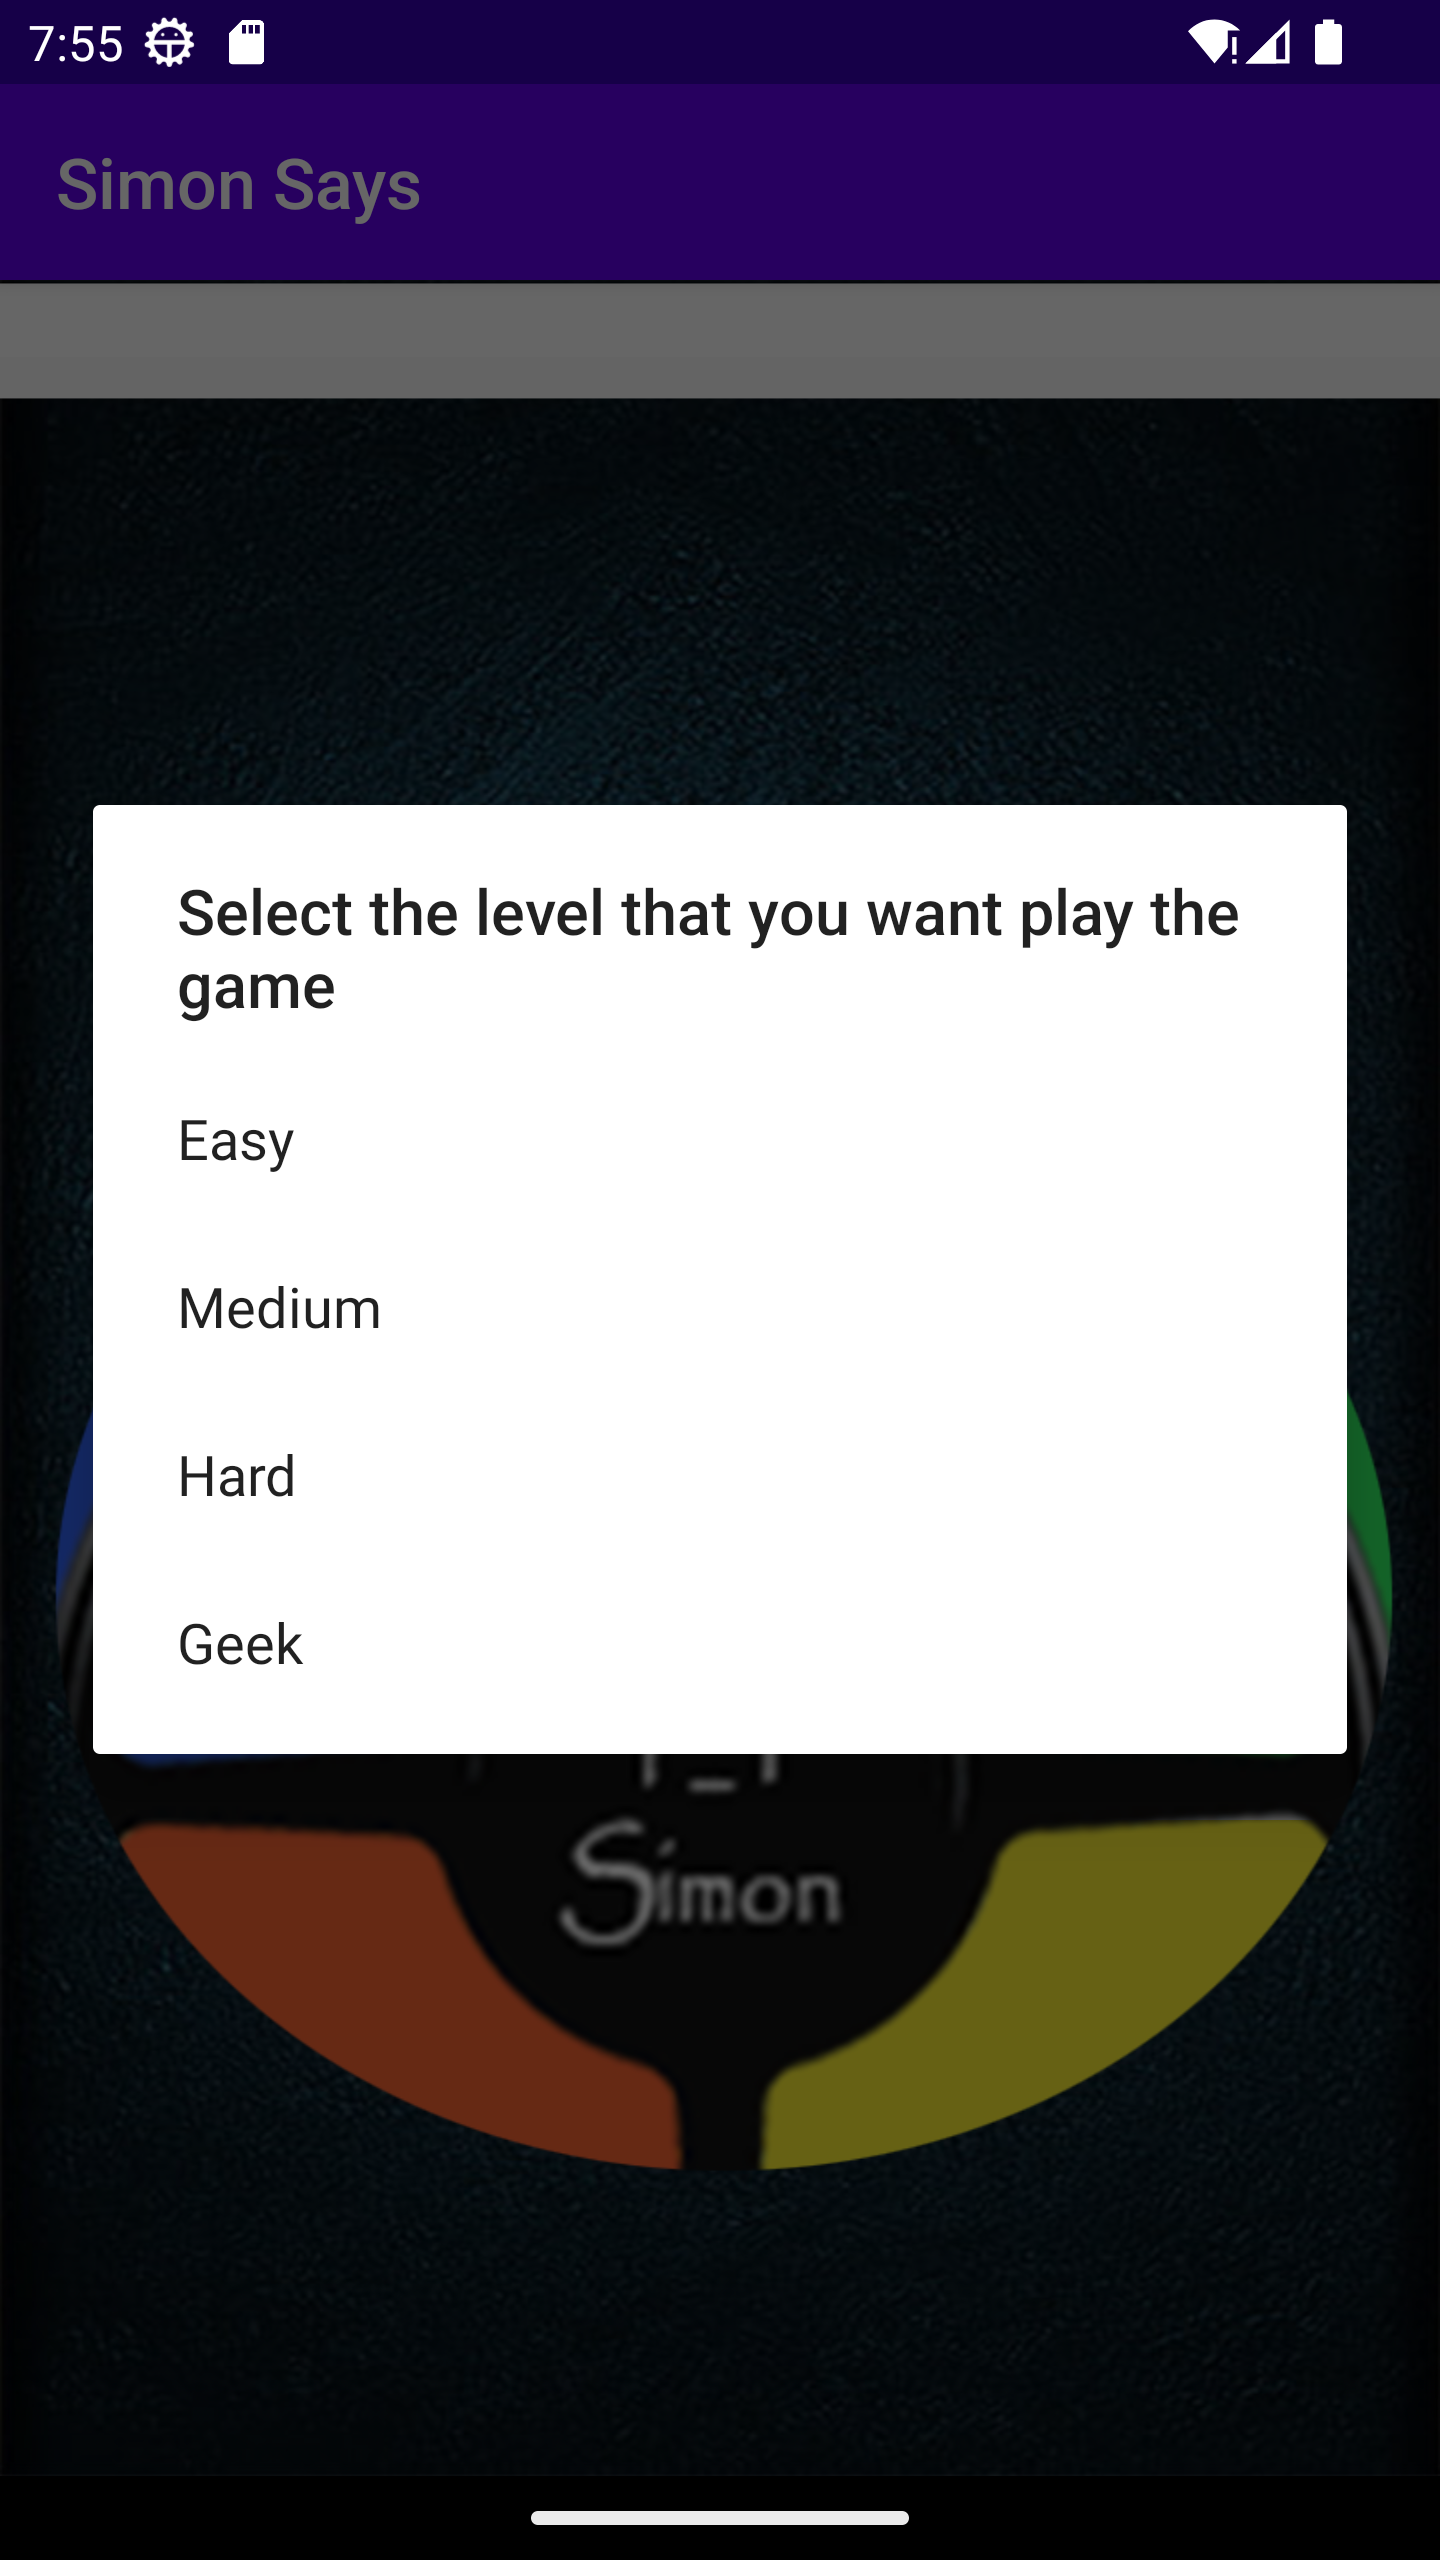 Simon Says screenshot game